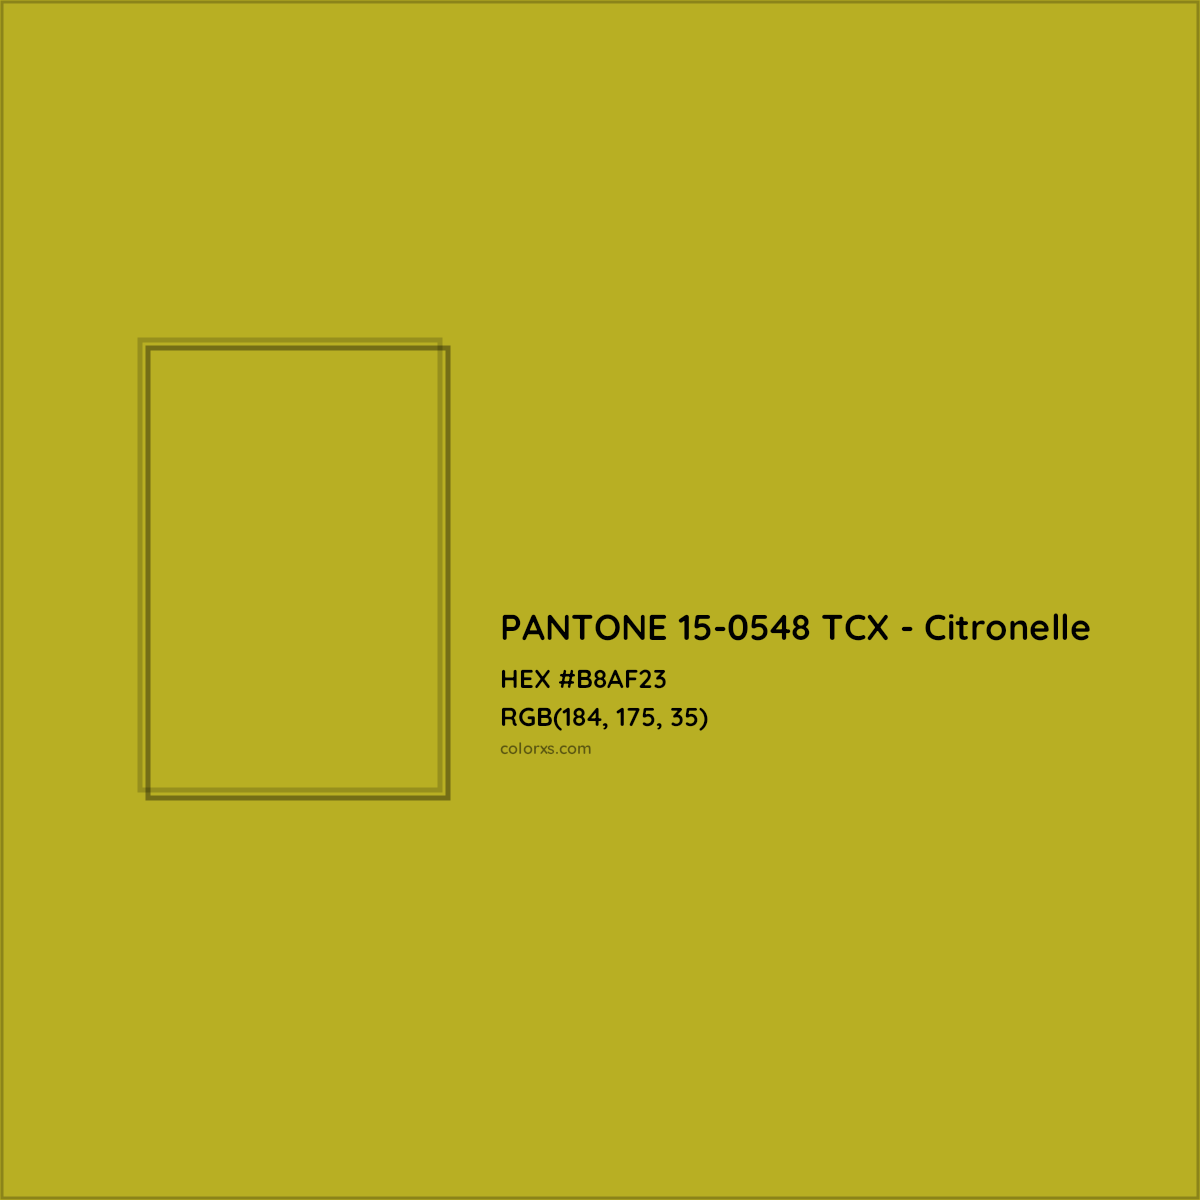 HEX #B8AF23 PANTONE 15-0548 TCX - Citronelle CMS Pantone TCX - Color Code